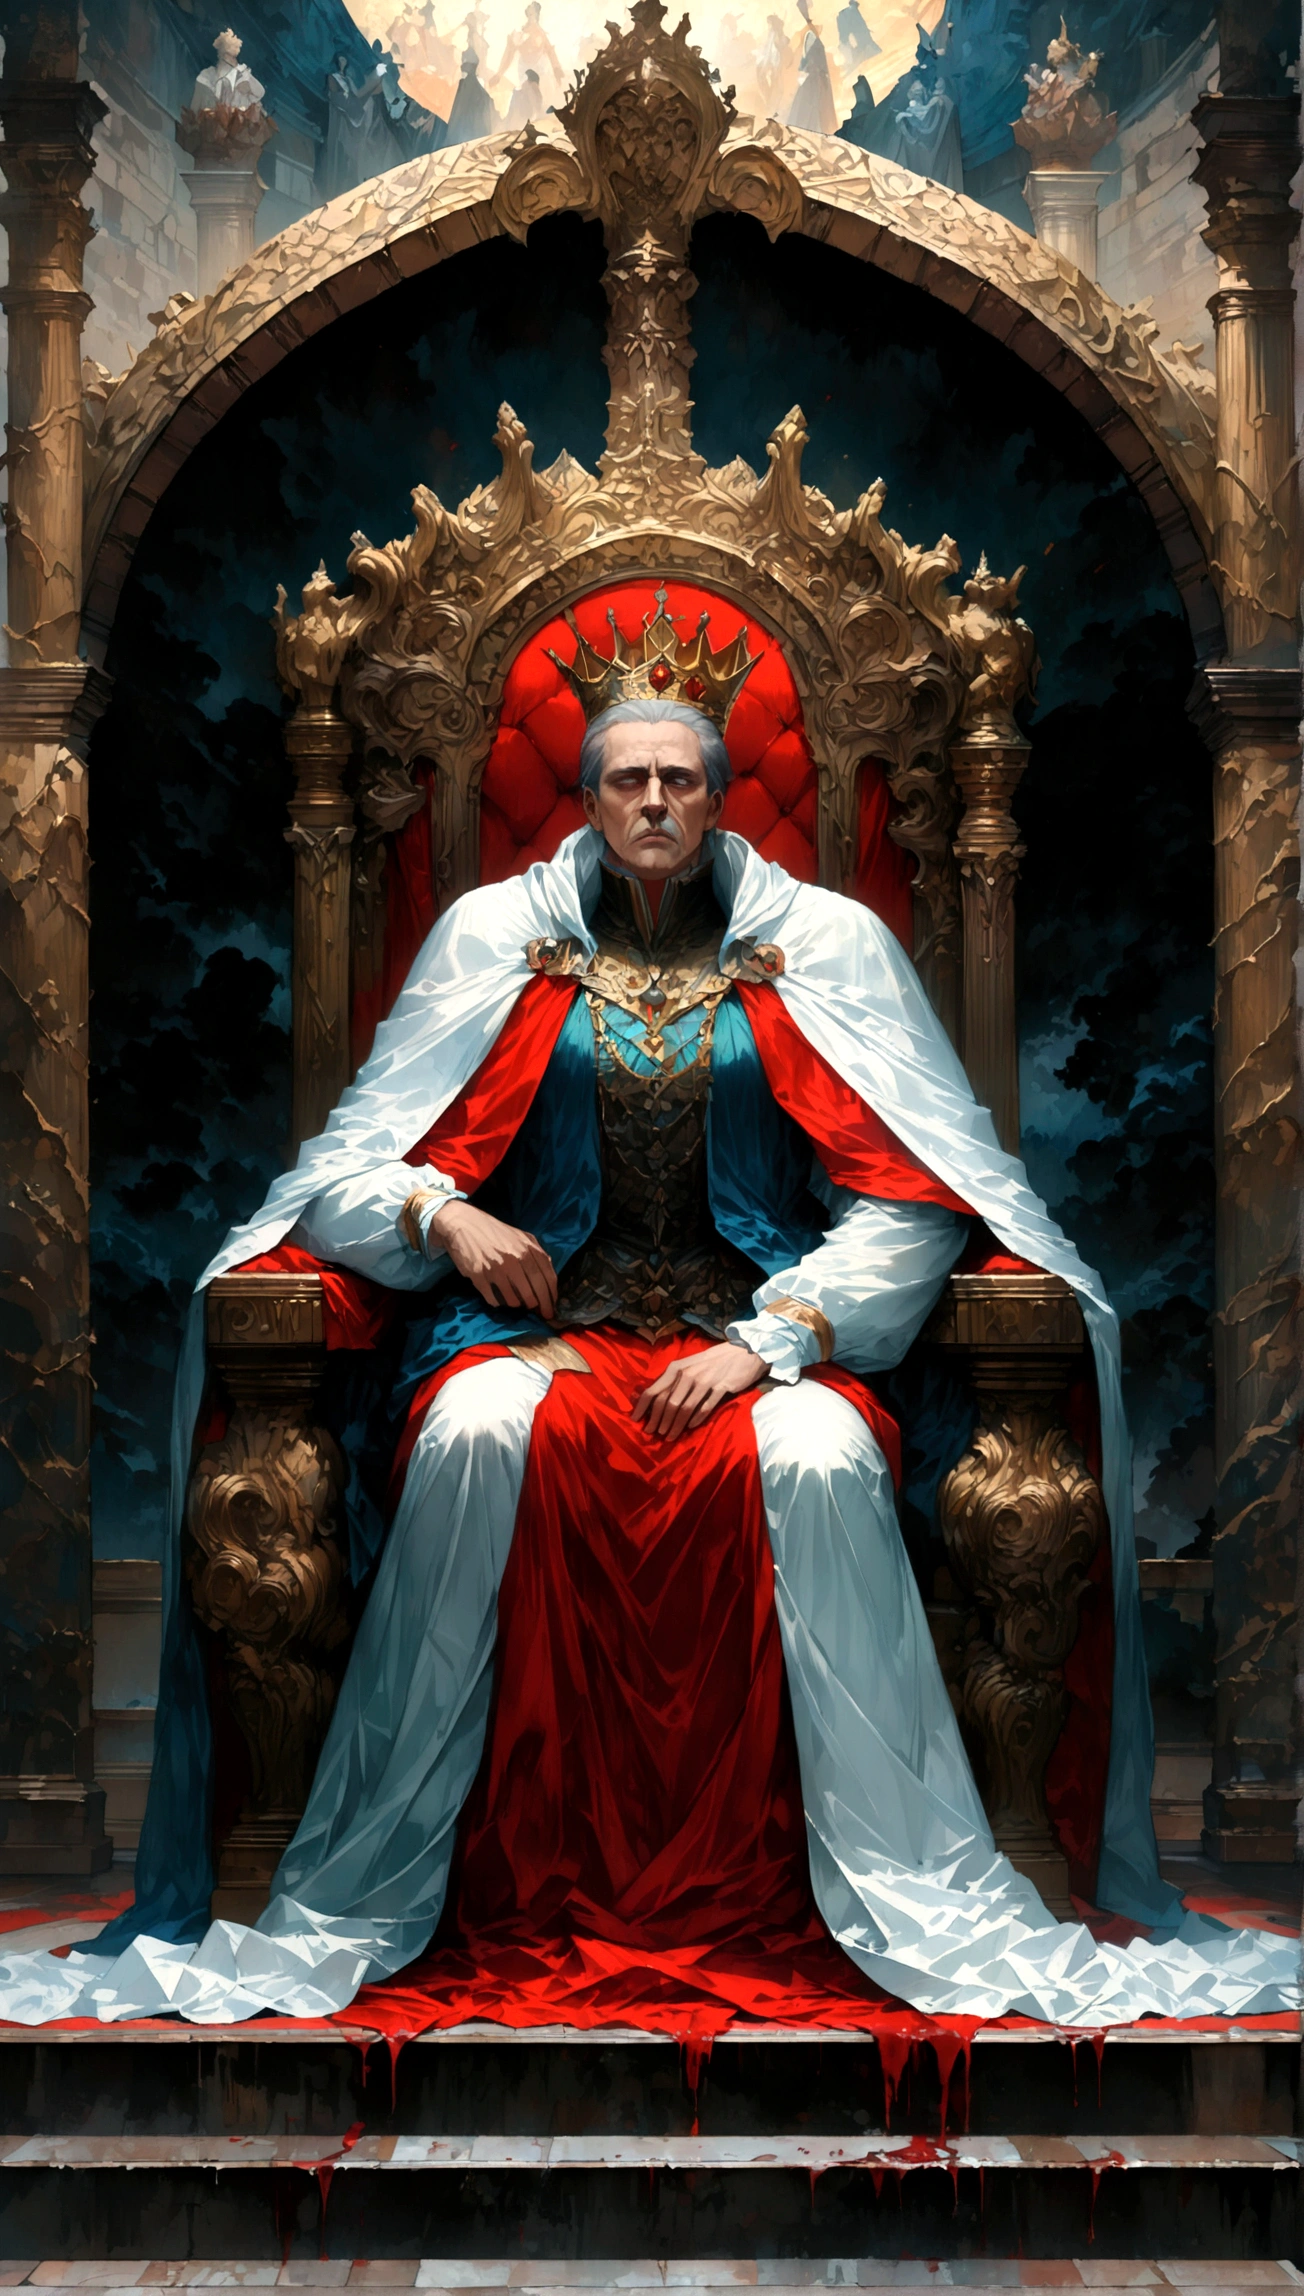 玉座の間の景色,油絵スタイル,画像の上半分に王座に座る王を描きます,被写体を画像の下部に伏せた状態で描く.,絶対的な権力を持ち、国民を見下す王,王の玉座と臣民の間には距離がある.,壊す,the king is a newly クラウンed man,彼は王にふさわしい衣服とマントを着ている.,クラウン,私は王座の肘掛けに顎を乗せる.,彼は残酷な性格の王だ.,解剖学的に正しい,壊す,歴史の時代を描いた絵画,油絵の具で塗る,構造的に正しい,(傑作:1.3),(最高品質:1.4),(超詳細:1.5),高解像度,非常に詳細な,ユニティ 8k 壁紙,退廃的な,ダークファンタジー,ホラースタイル,恐れ,畏敬の念,圧迫感